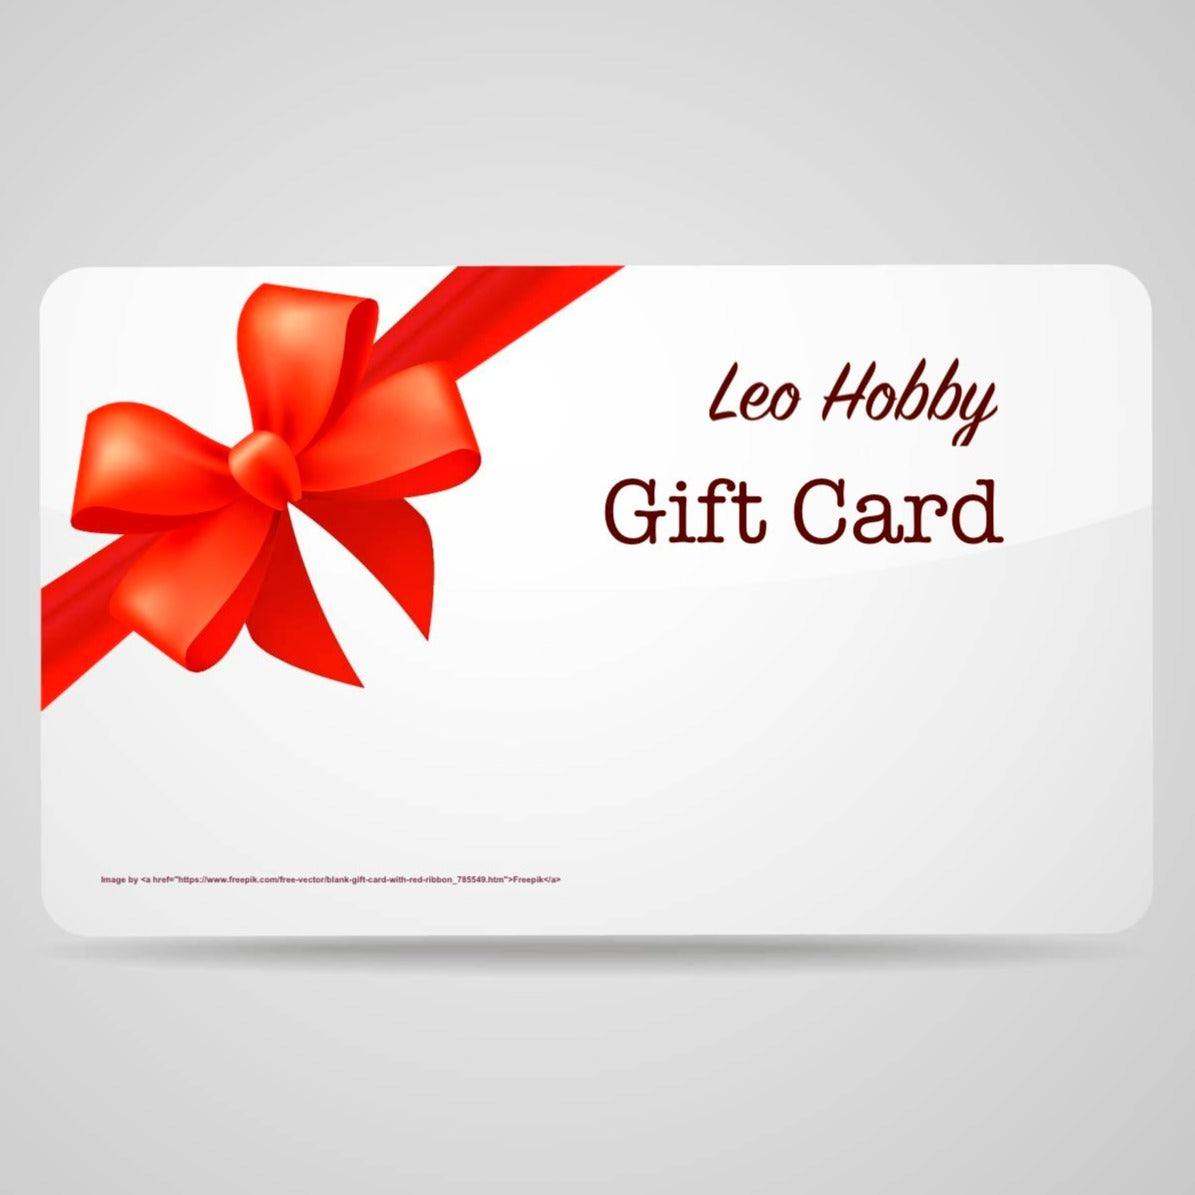 Leo Hobby Gift Card - Leo Hobby